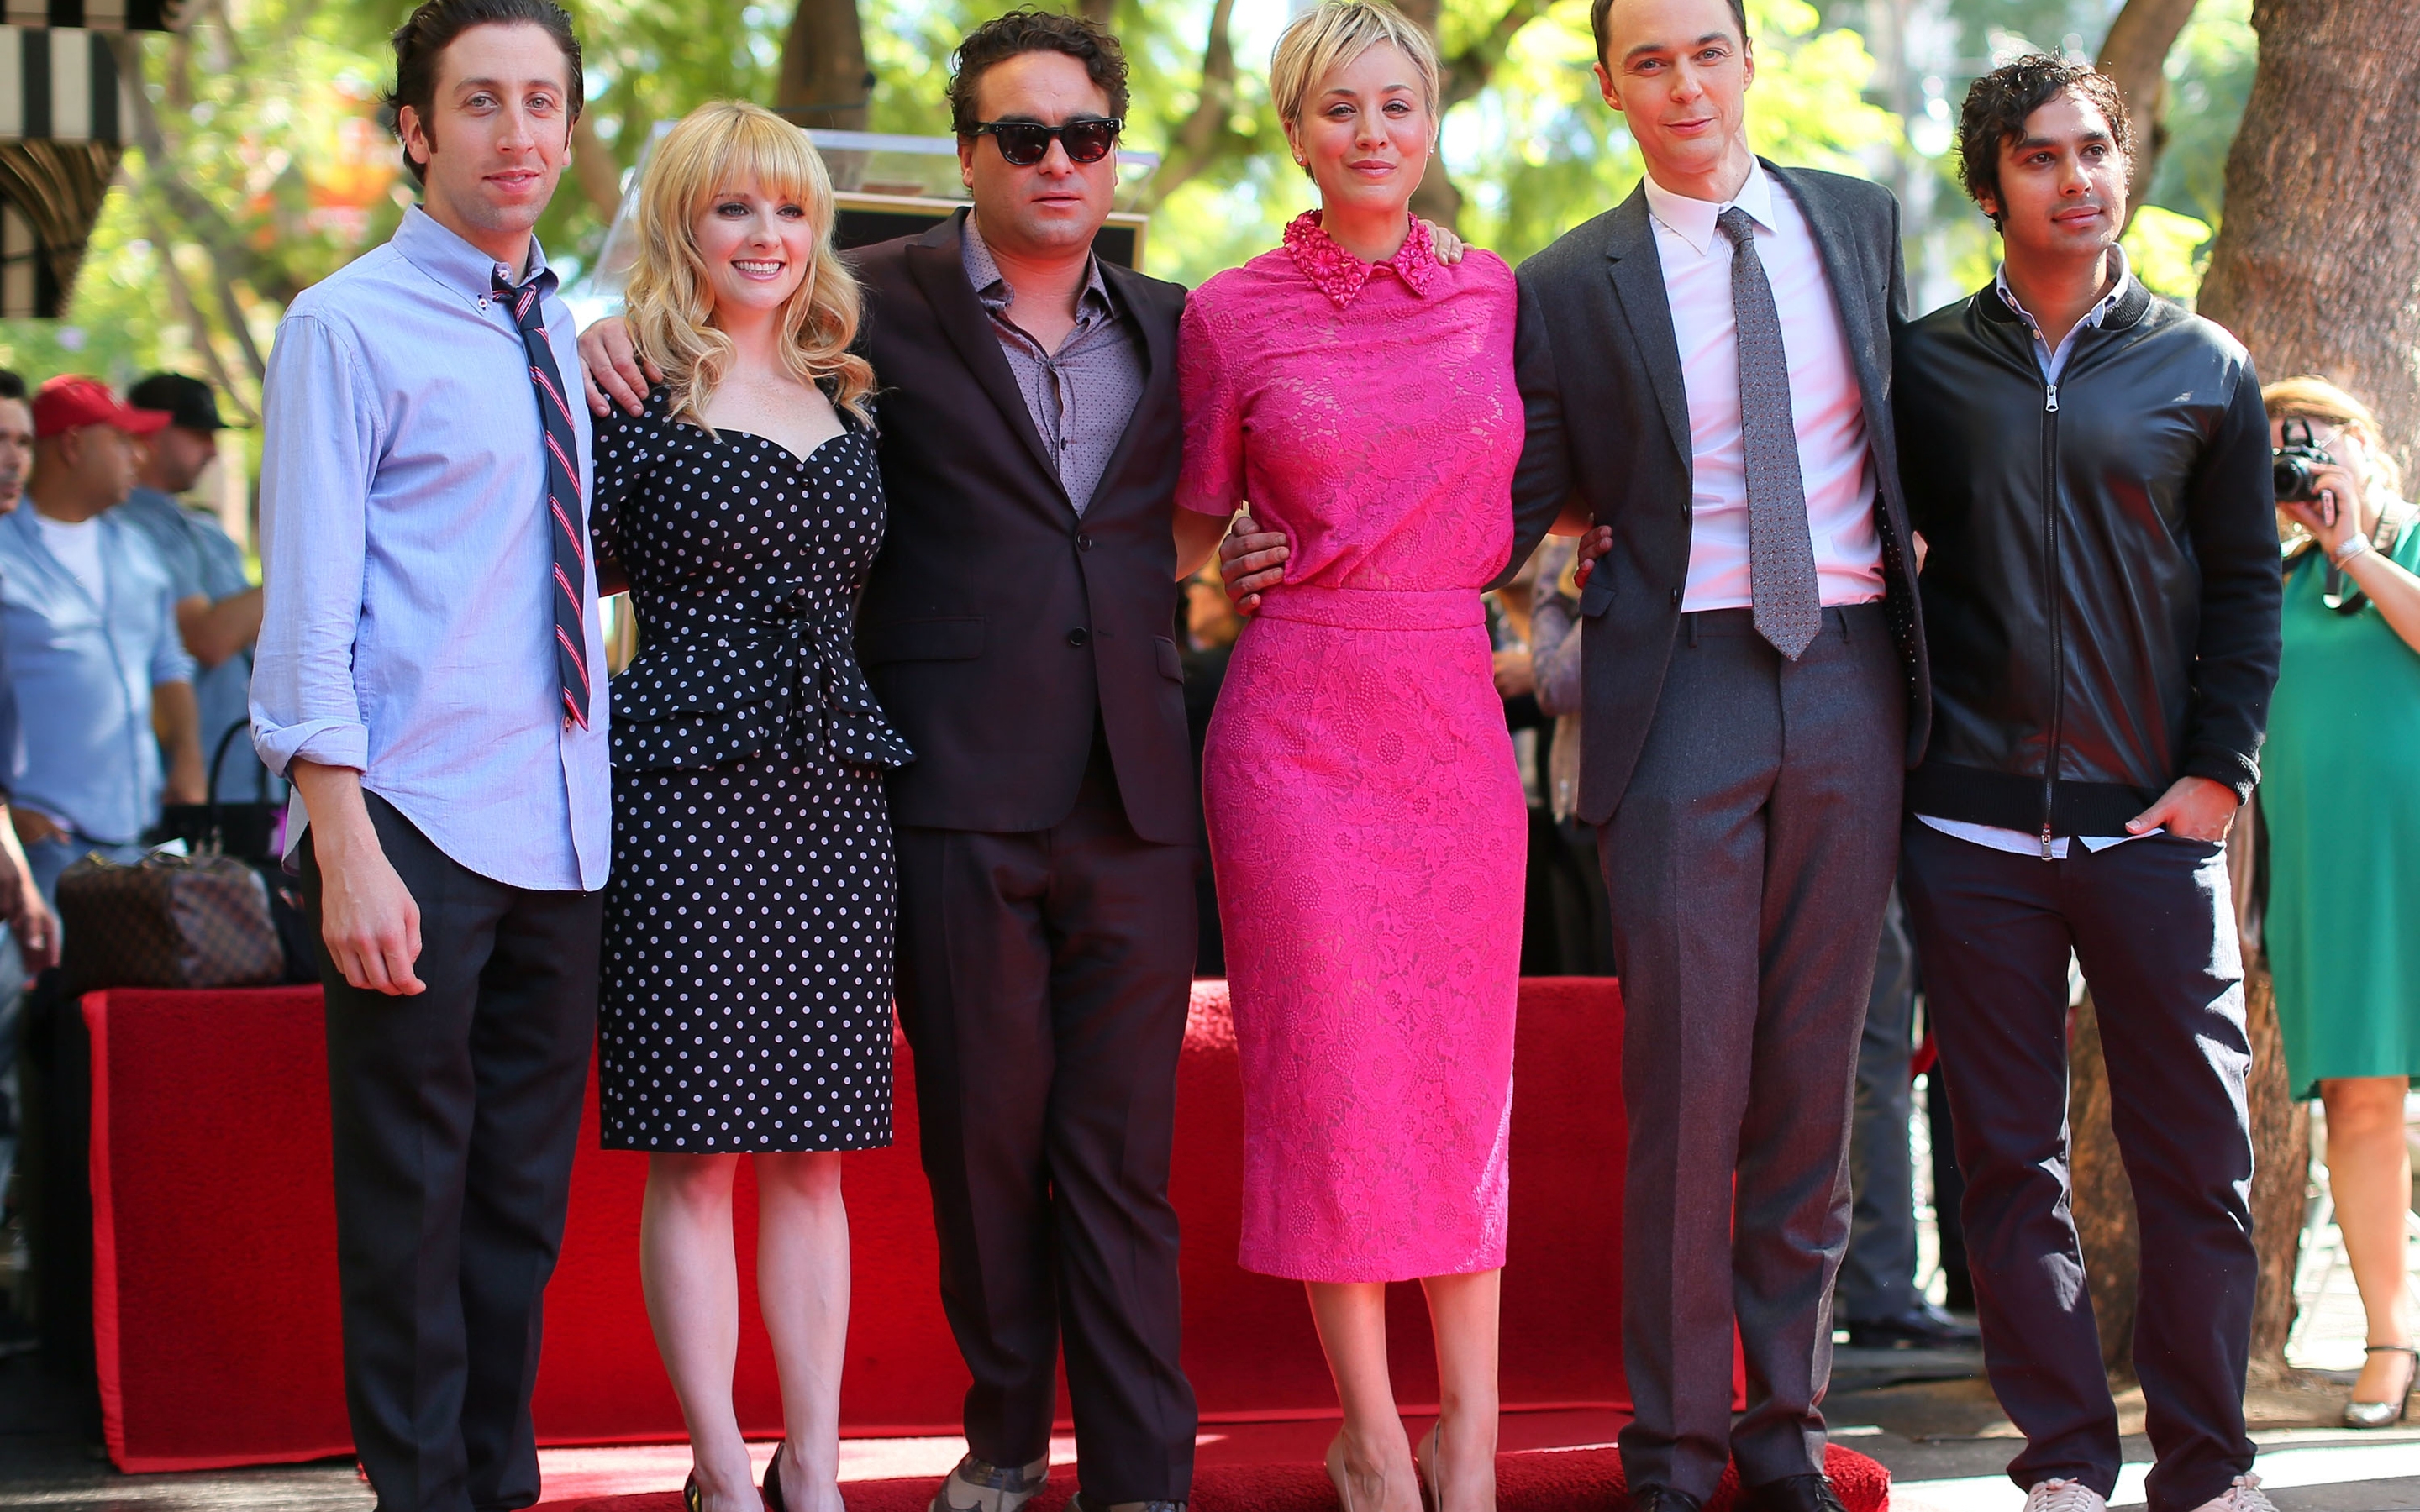 The Big Bang Theory Walk of Fame for 2880 x 1800 Retina Display resolution